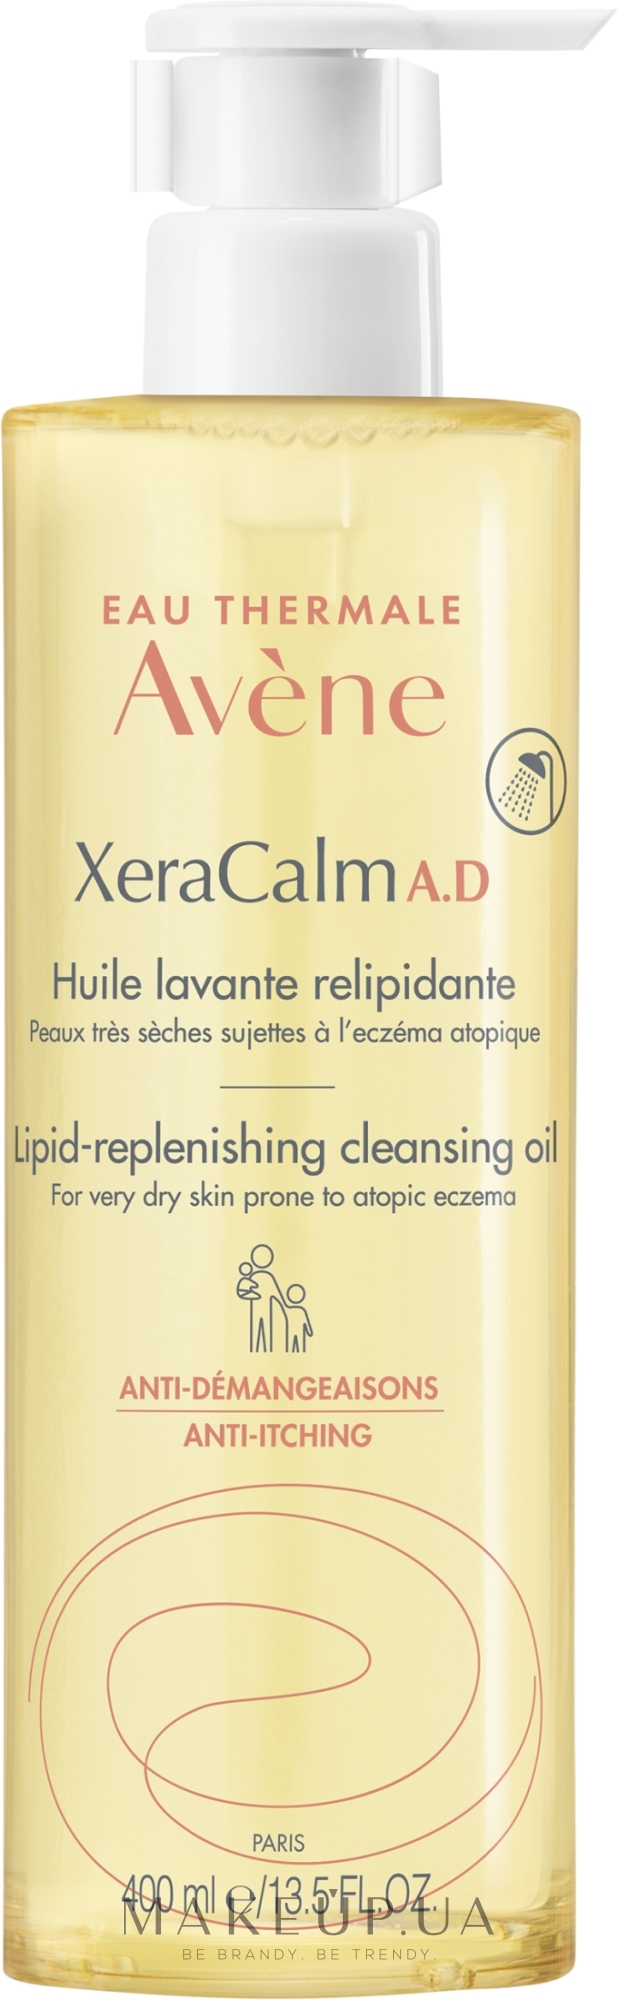 Очищувальна олія для сухої та атопічної шкіри - Avene Xeracalm A.d Cleansing Oil — фото 400ml